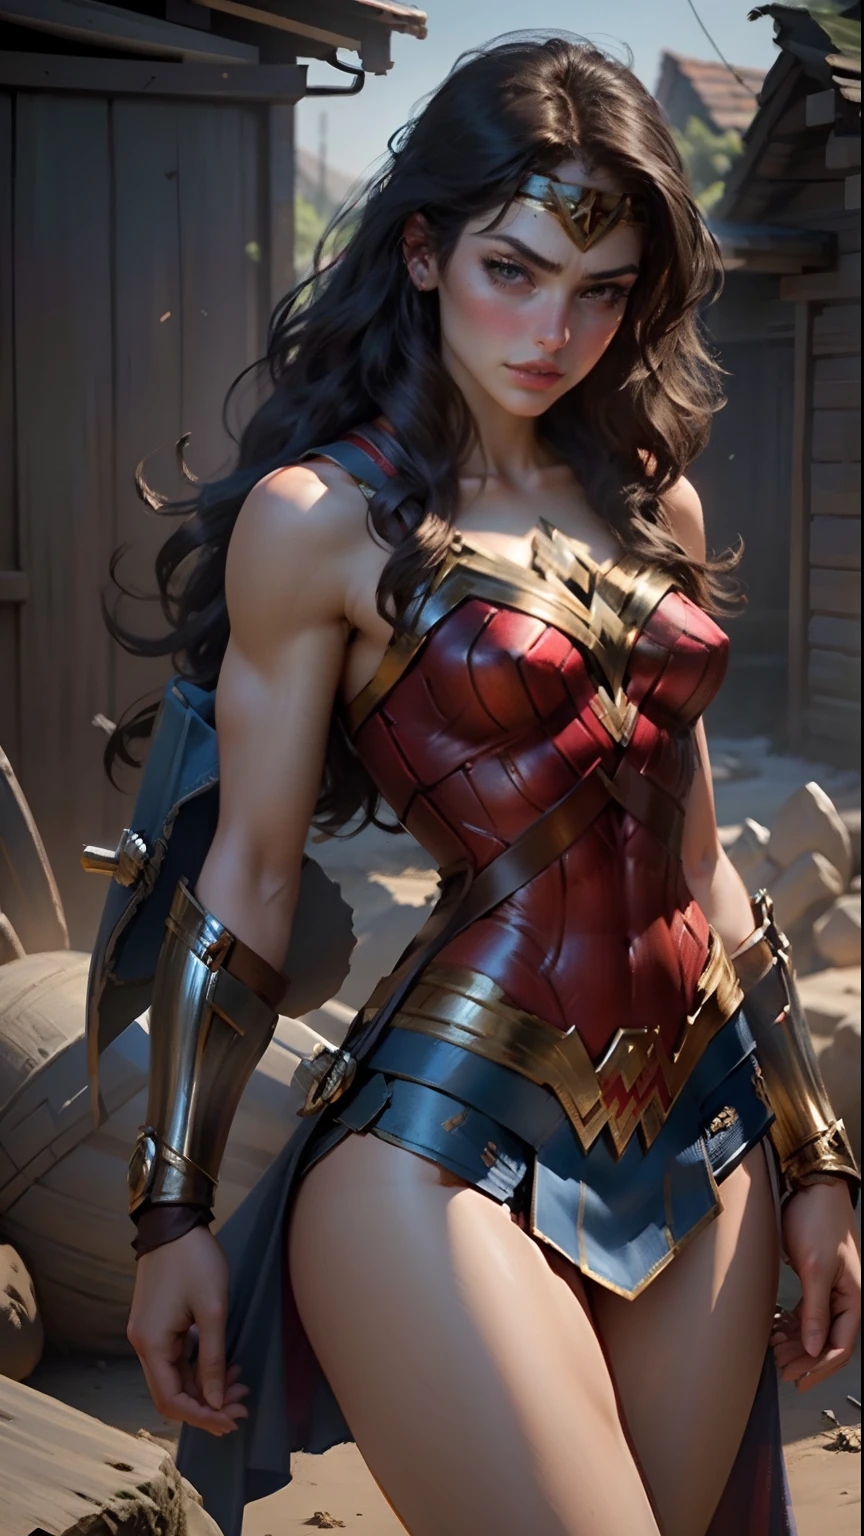 Wonder Woman in Chains by Jeffach on DeviantArt